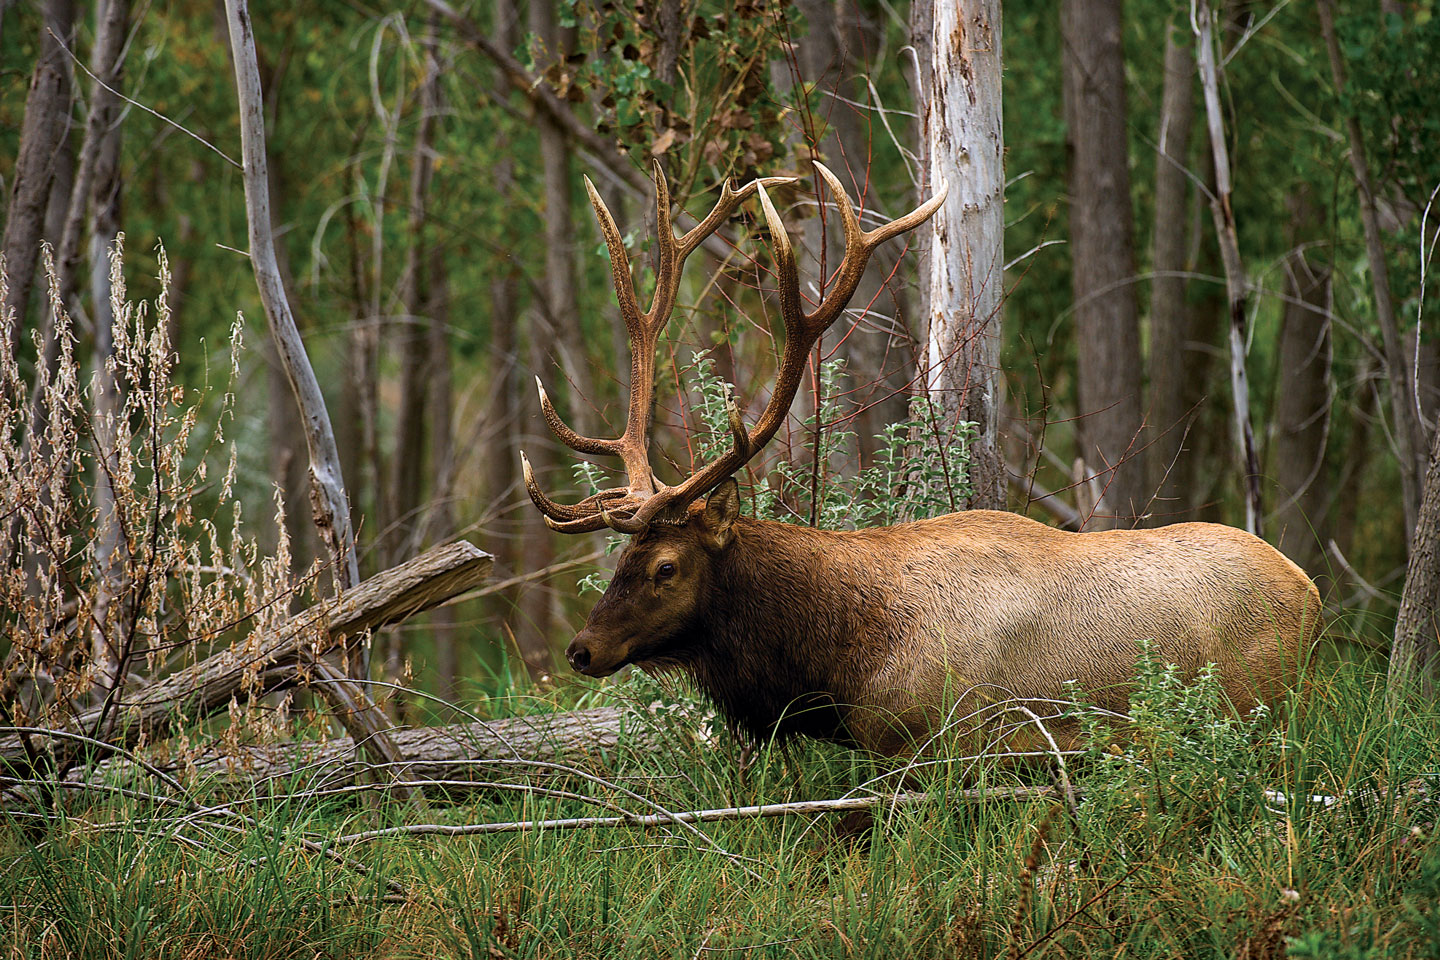 Bull elk walking through a forest.